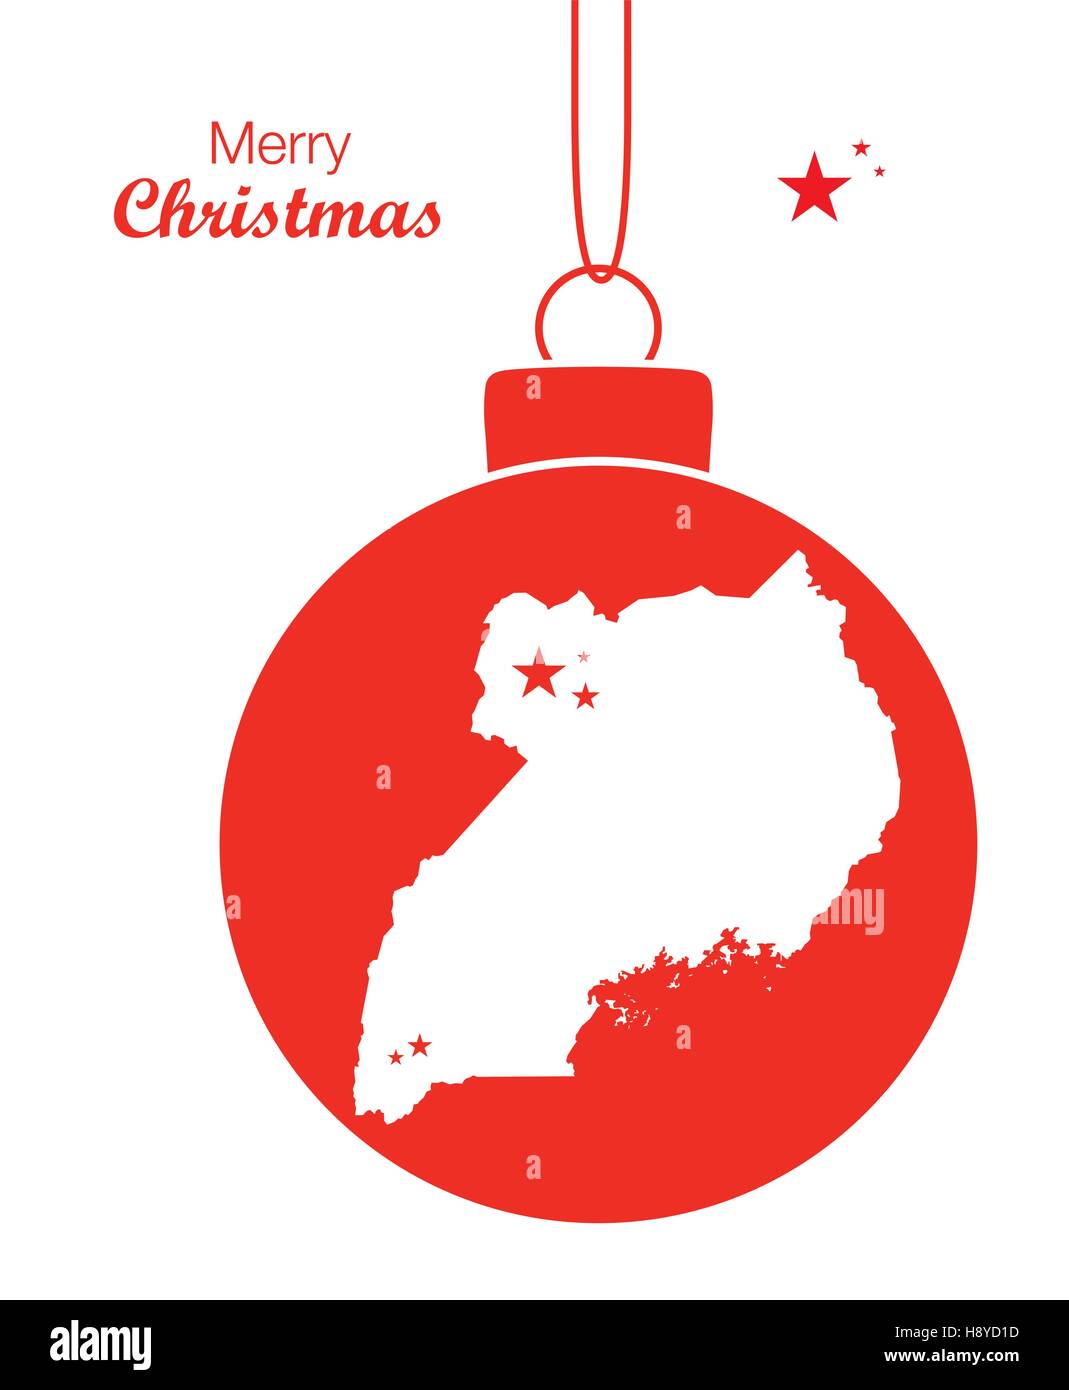 Joyeux Noël thème d'illustration avec la carte de l'Ouganda Illustration de Vecteur